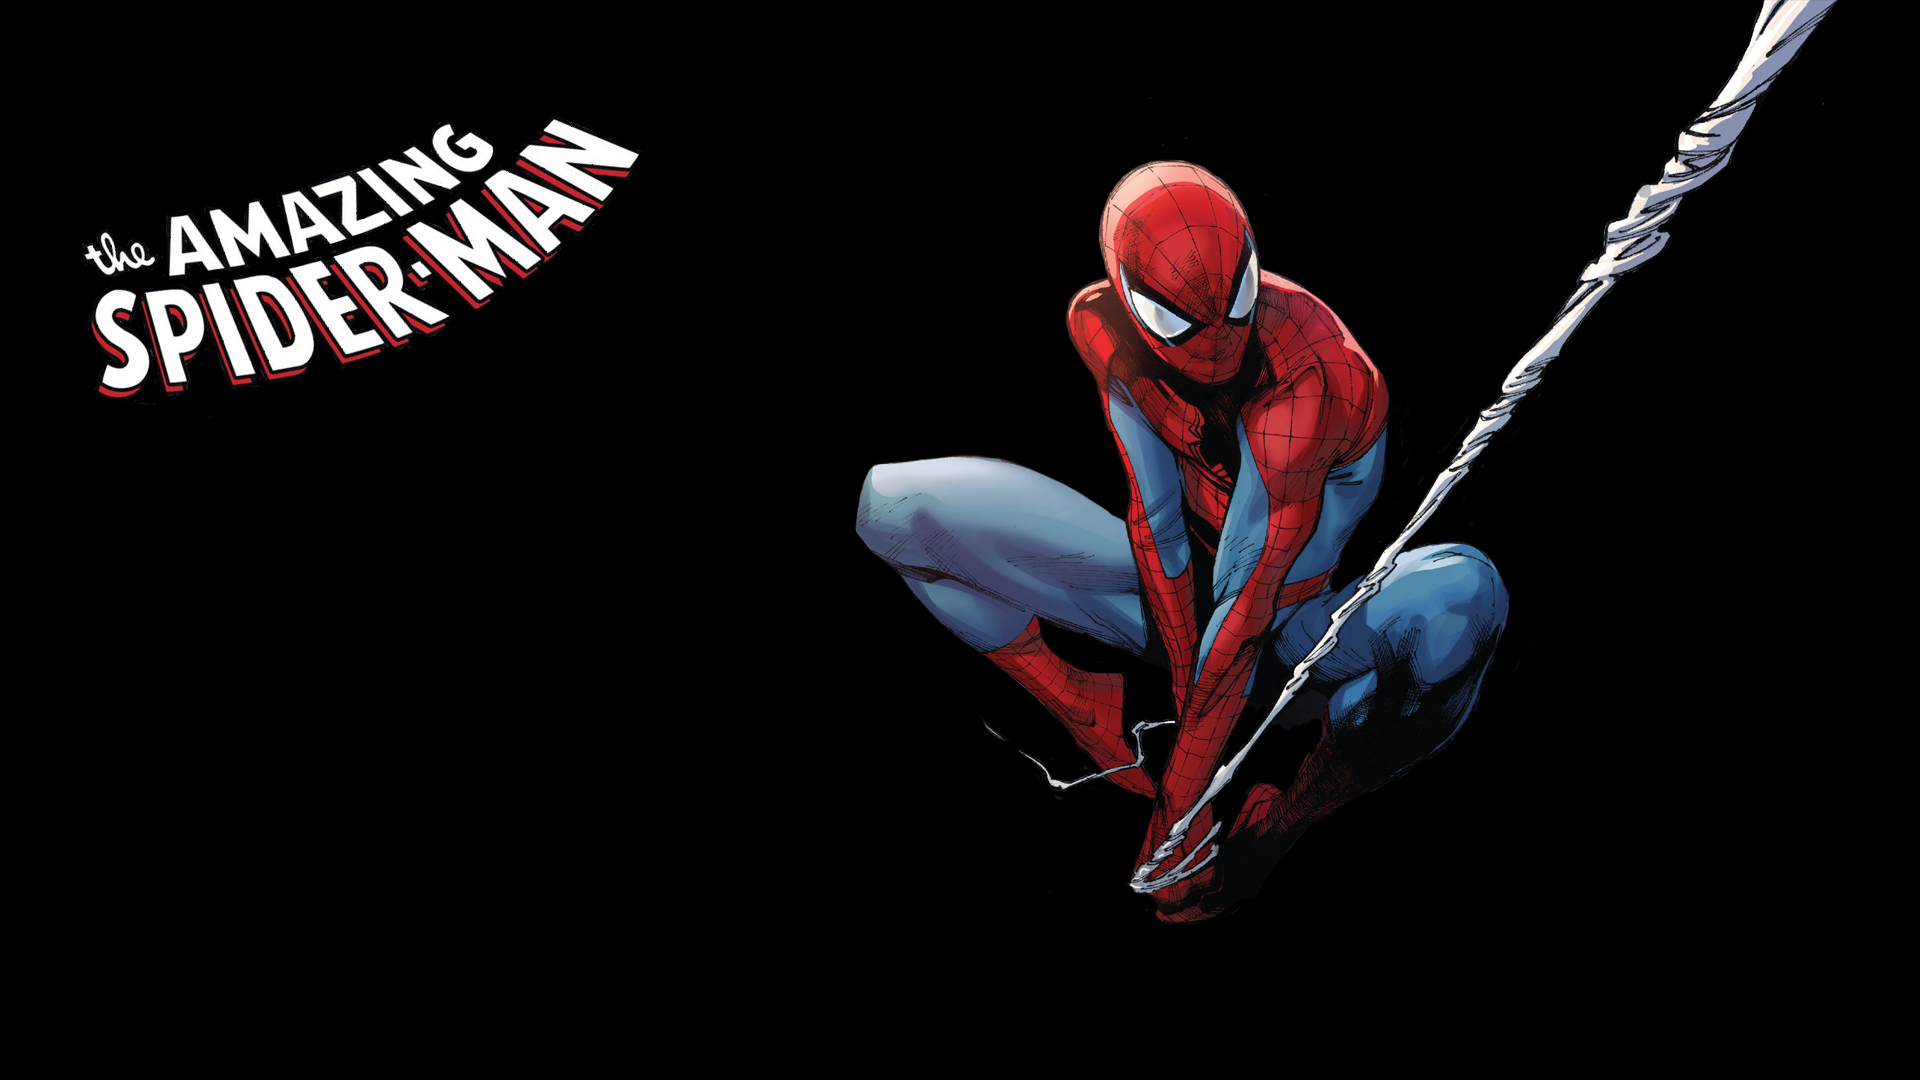 spiderman fondos de pantalla hd,hombre araña,personaje de ficción,cuerpo humano,superhéroe,diseño gráfico